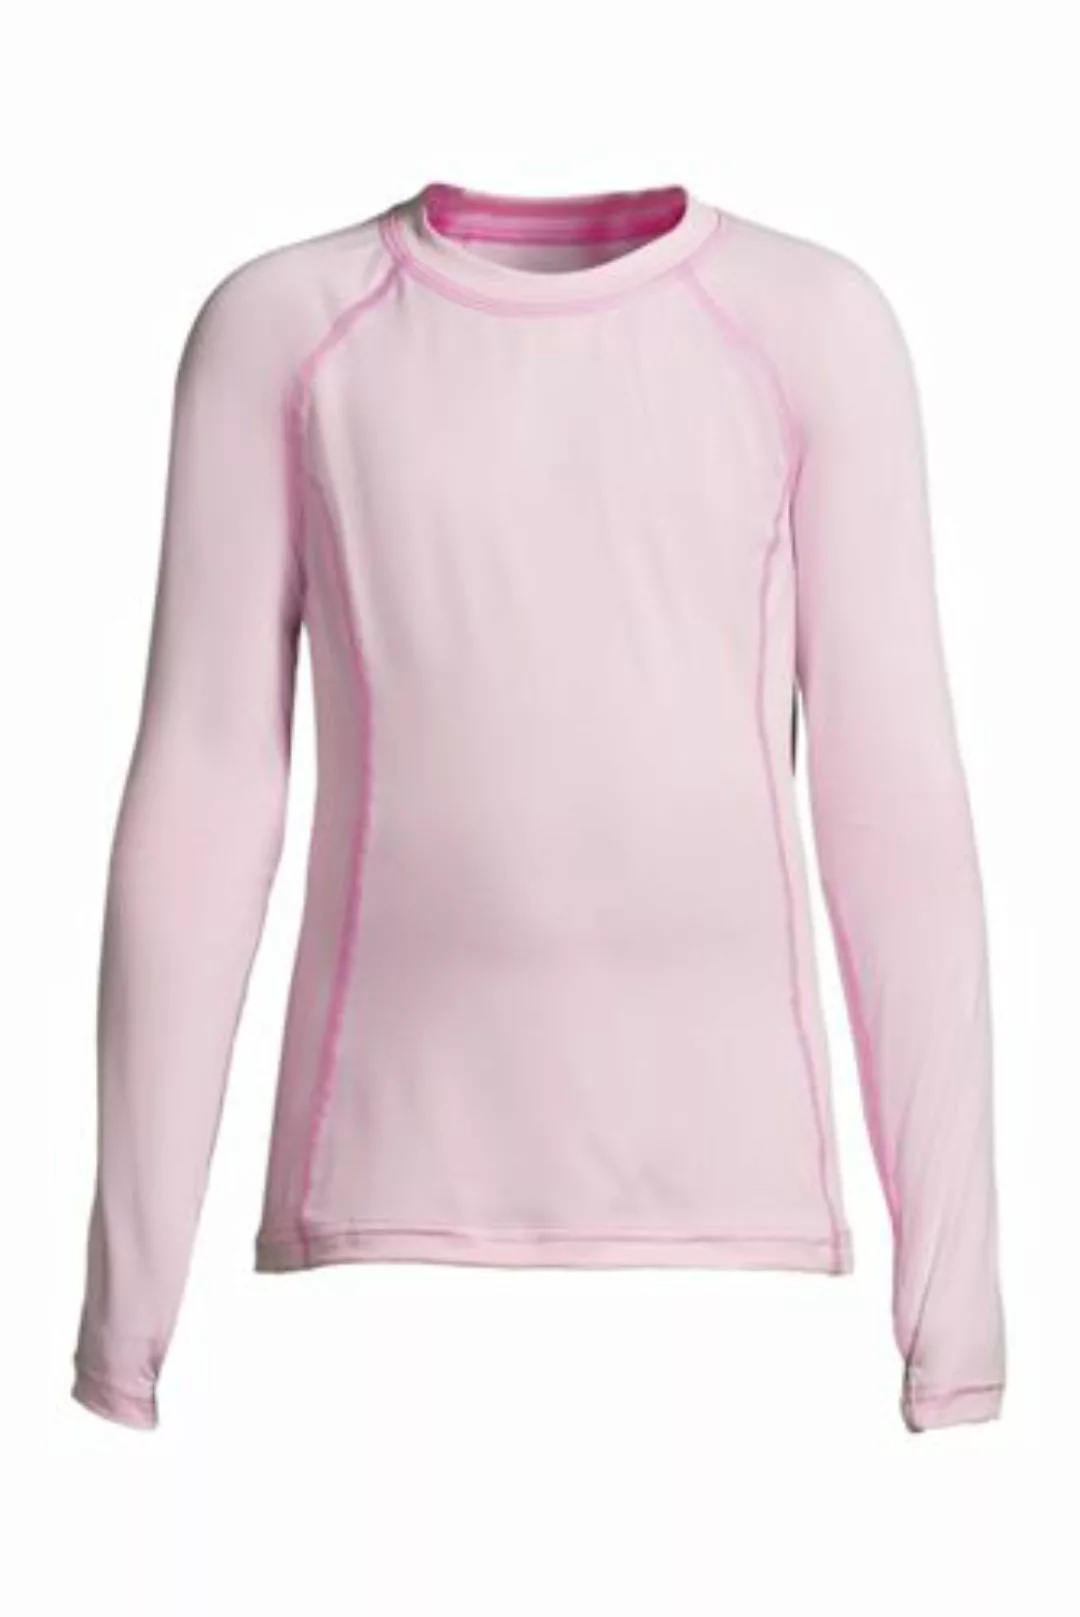 Funktionsshirt THERMASKIN, Größe: 110-116, Pink, Jersey, by Lands' End, Duf günstig online kaufen